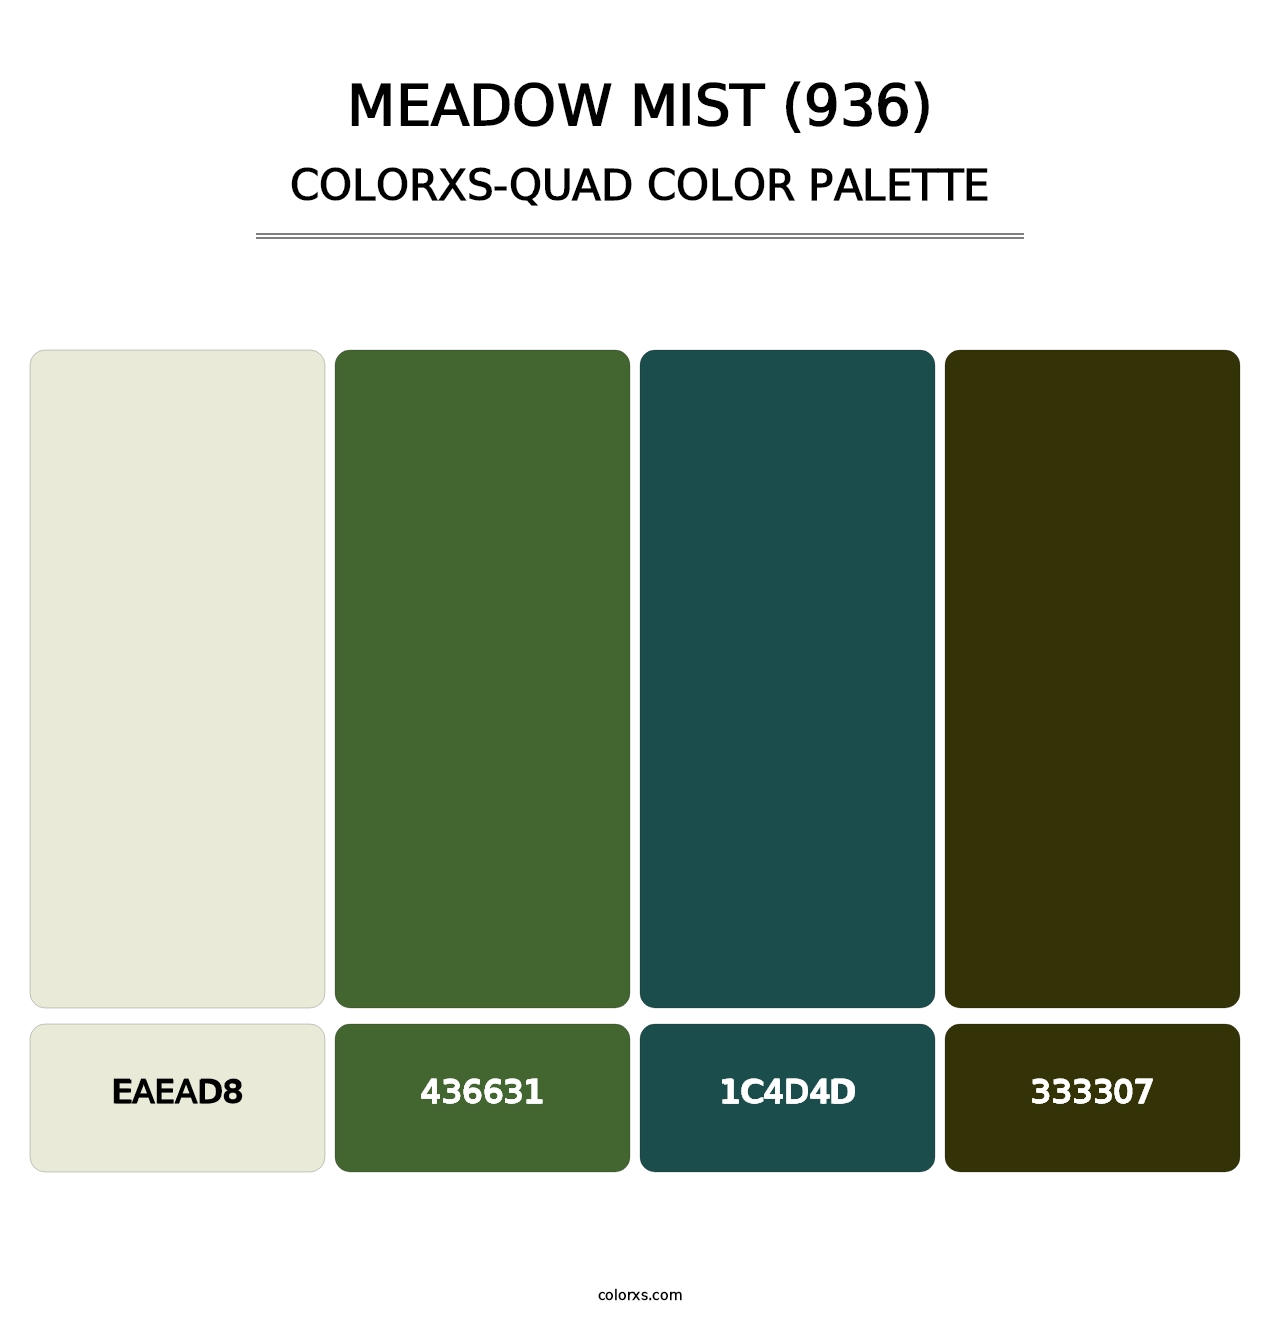 Meadow Mist (936) - Colorxs Quad Palette